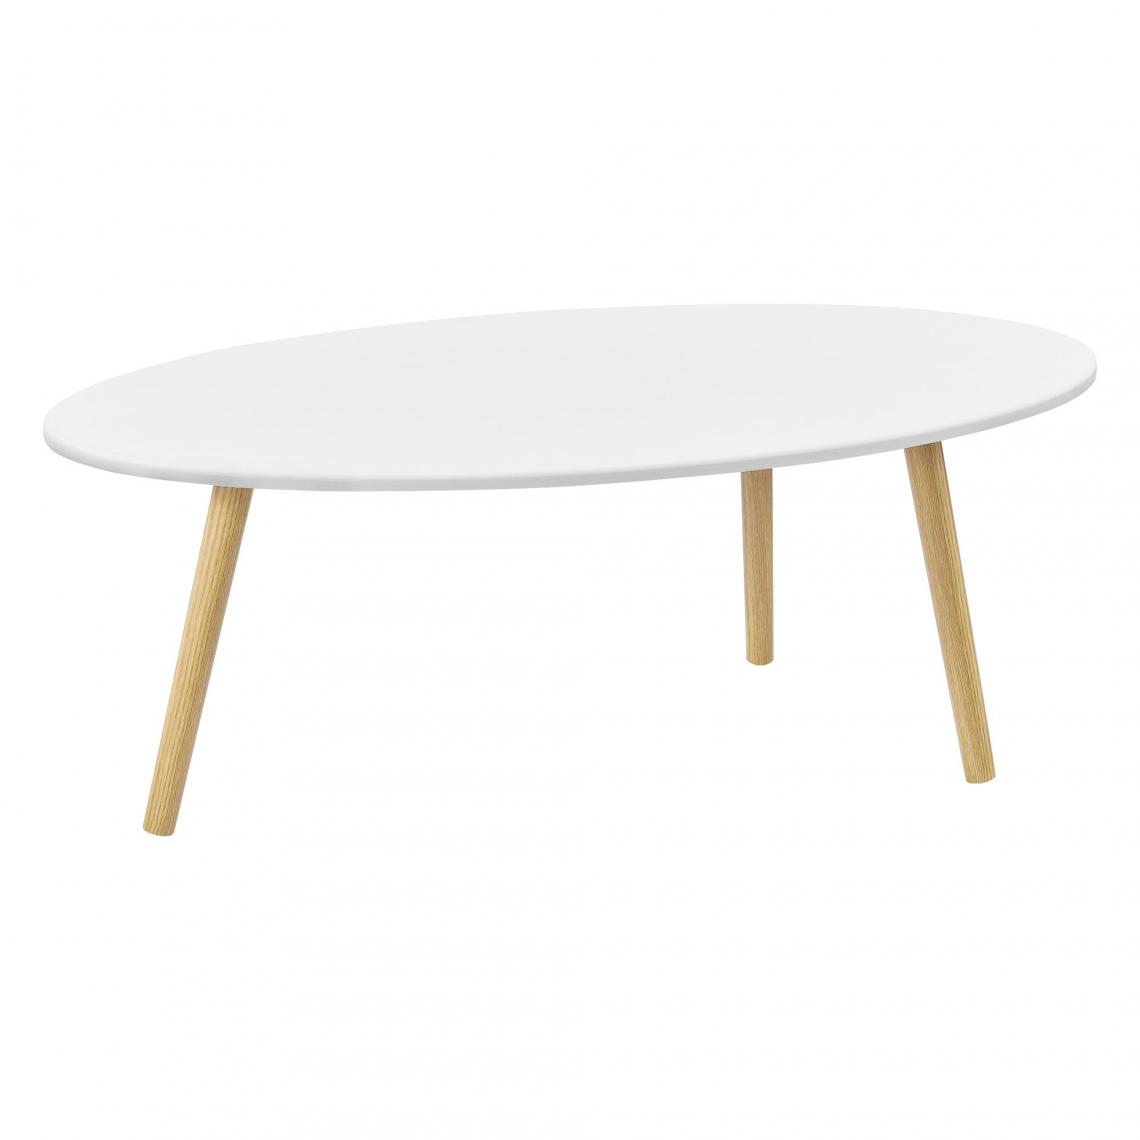 Helloshop26 - Table basse pour salon avec pieds bois MDF revêtu PVC 110 cm blanc 03_0006153 - Tables basses